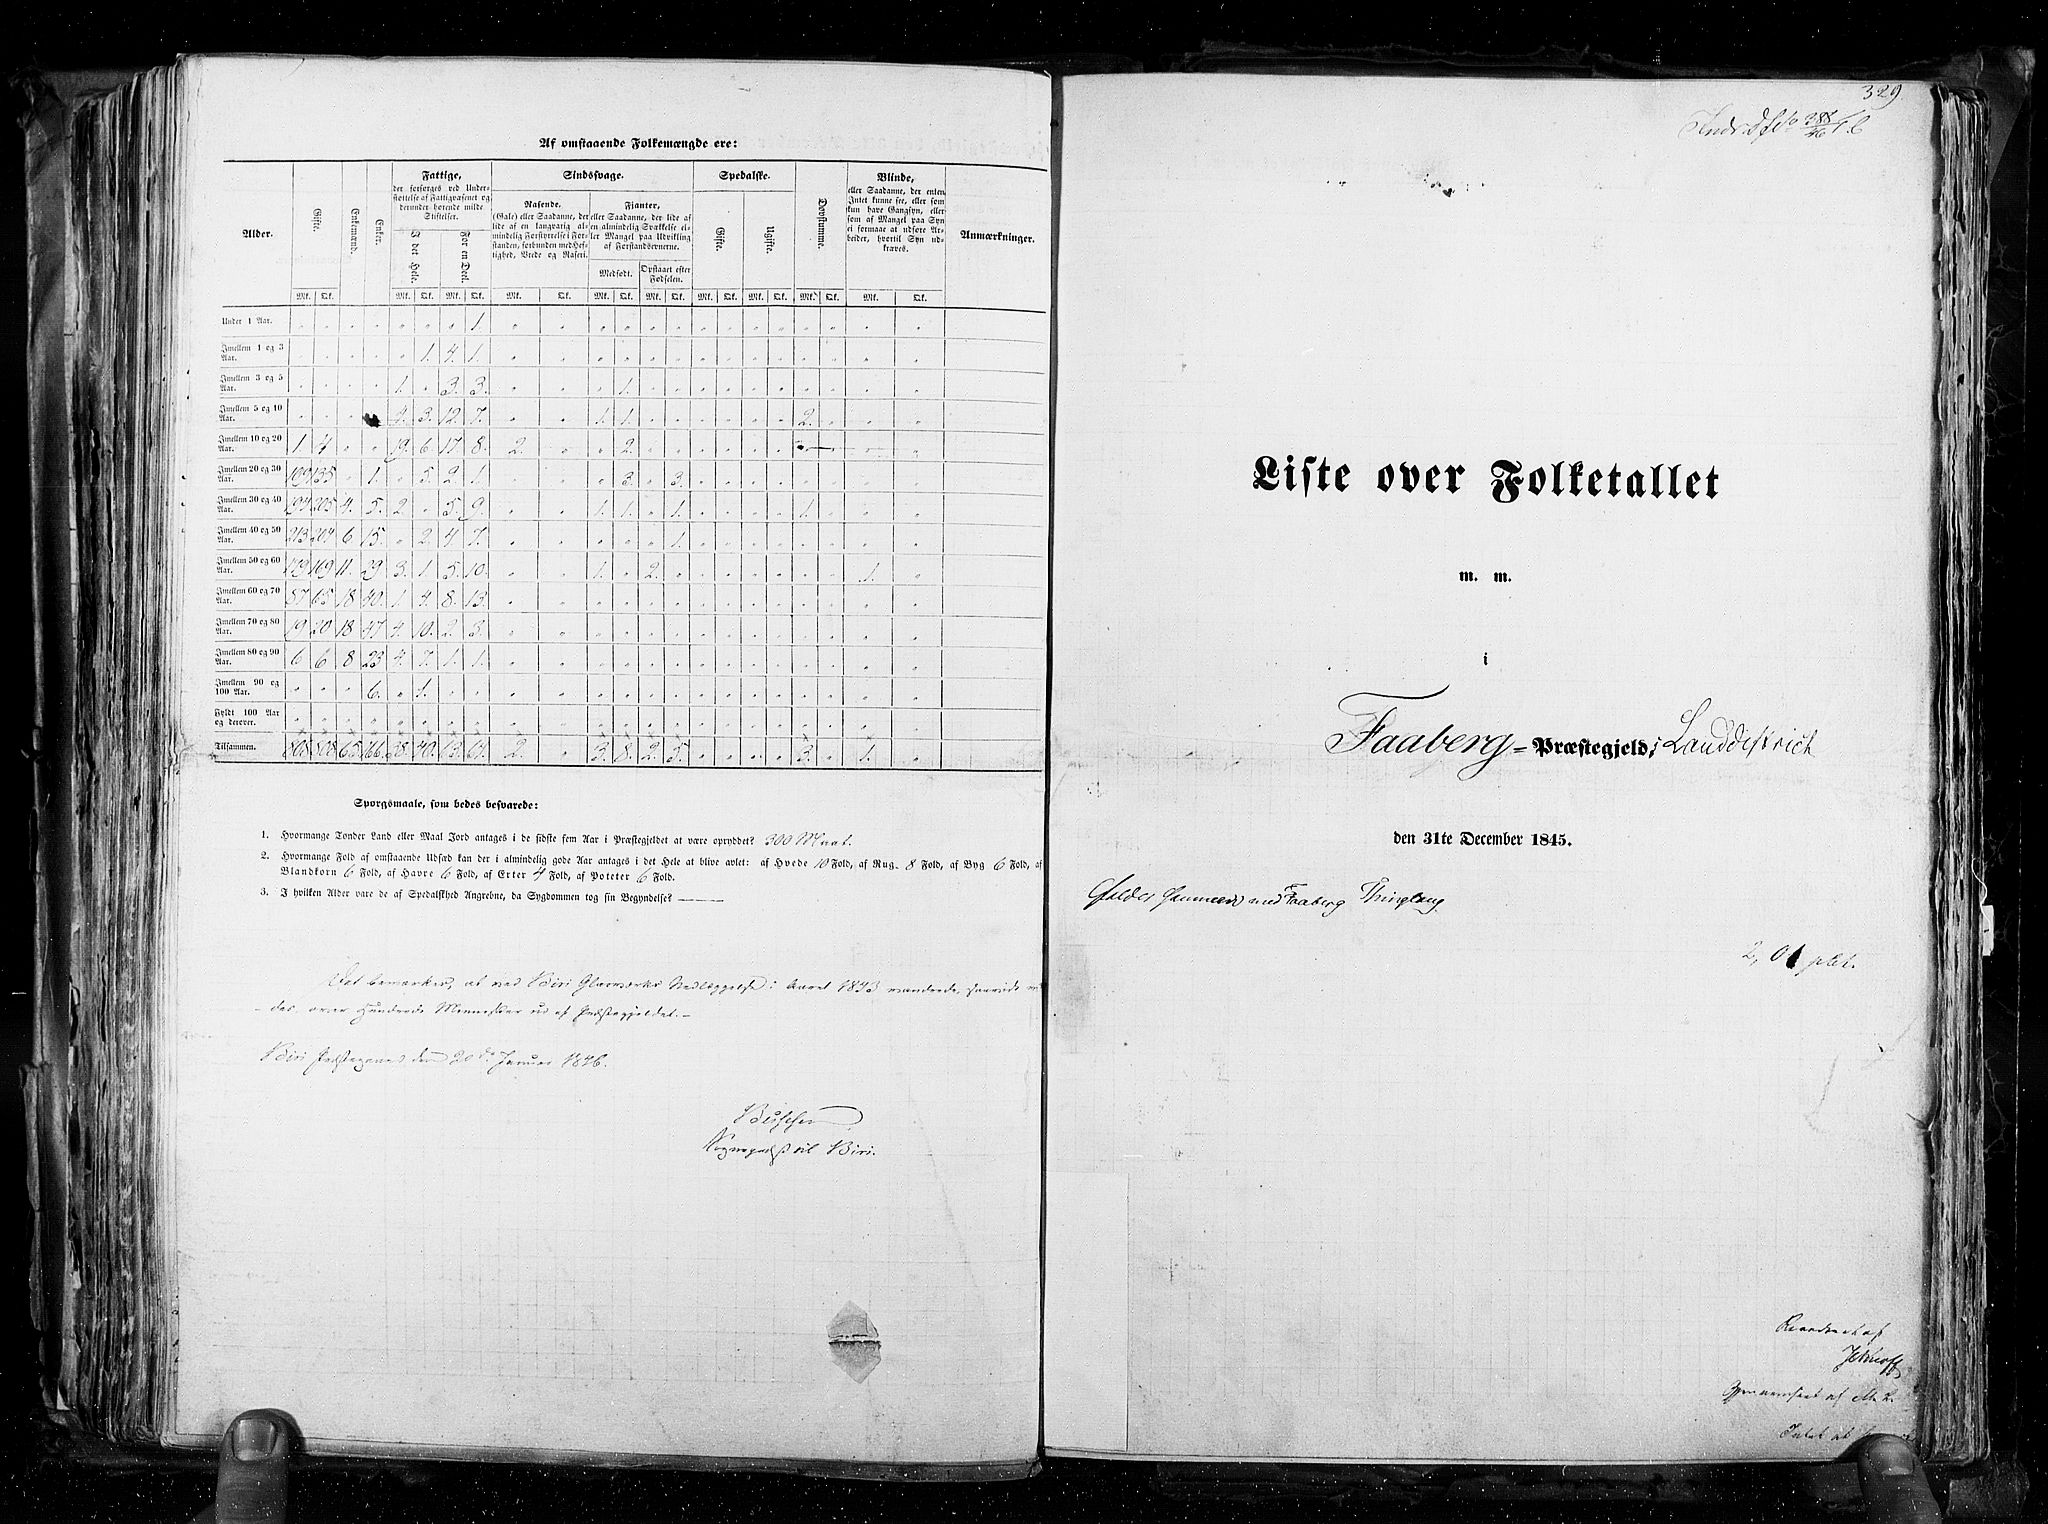 RA, Folketellingen 1845, bind 3: Hedemarken amt og Kristians amt, 1845, s. 329